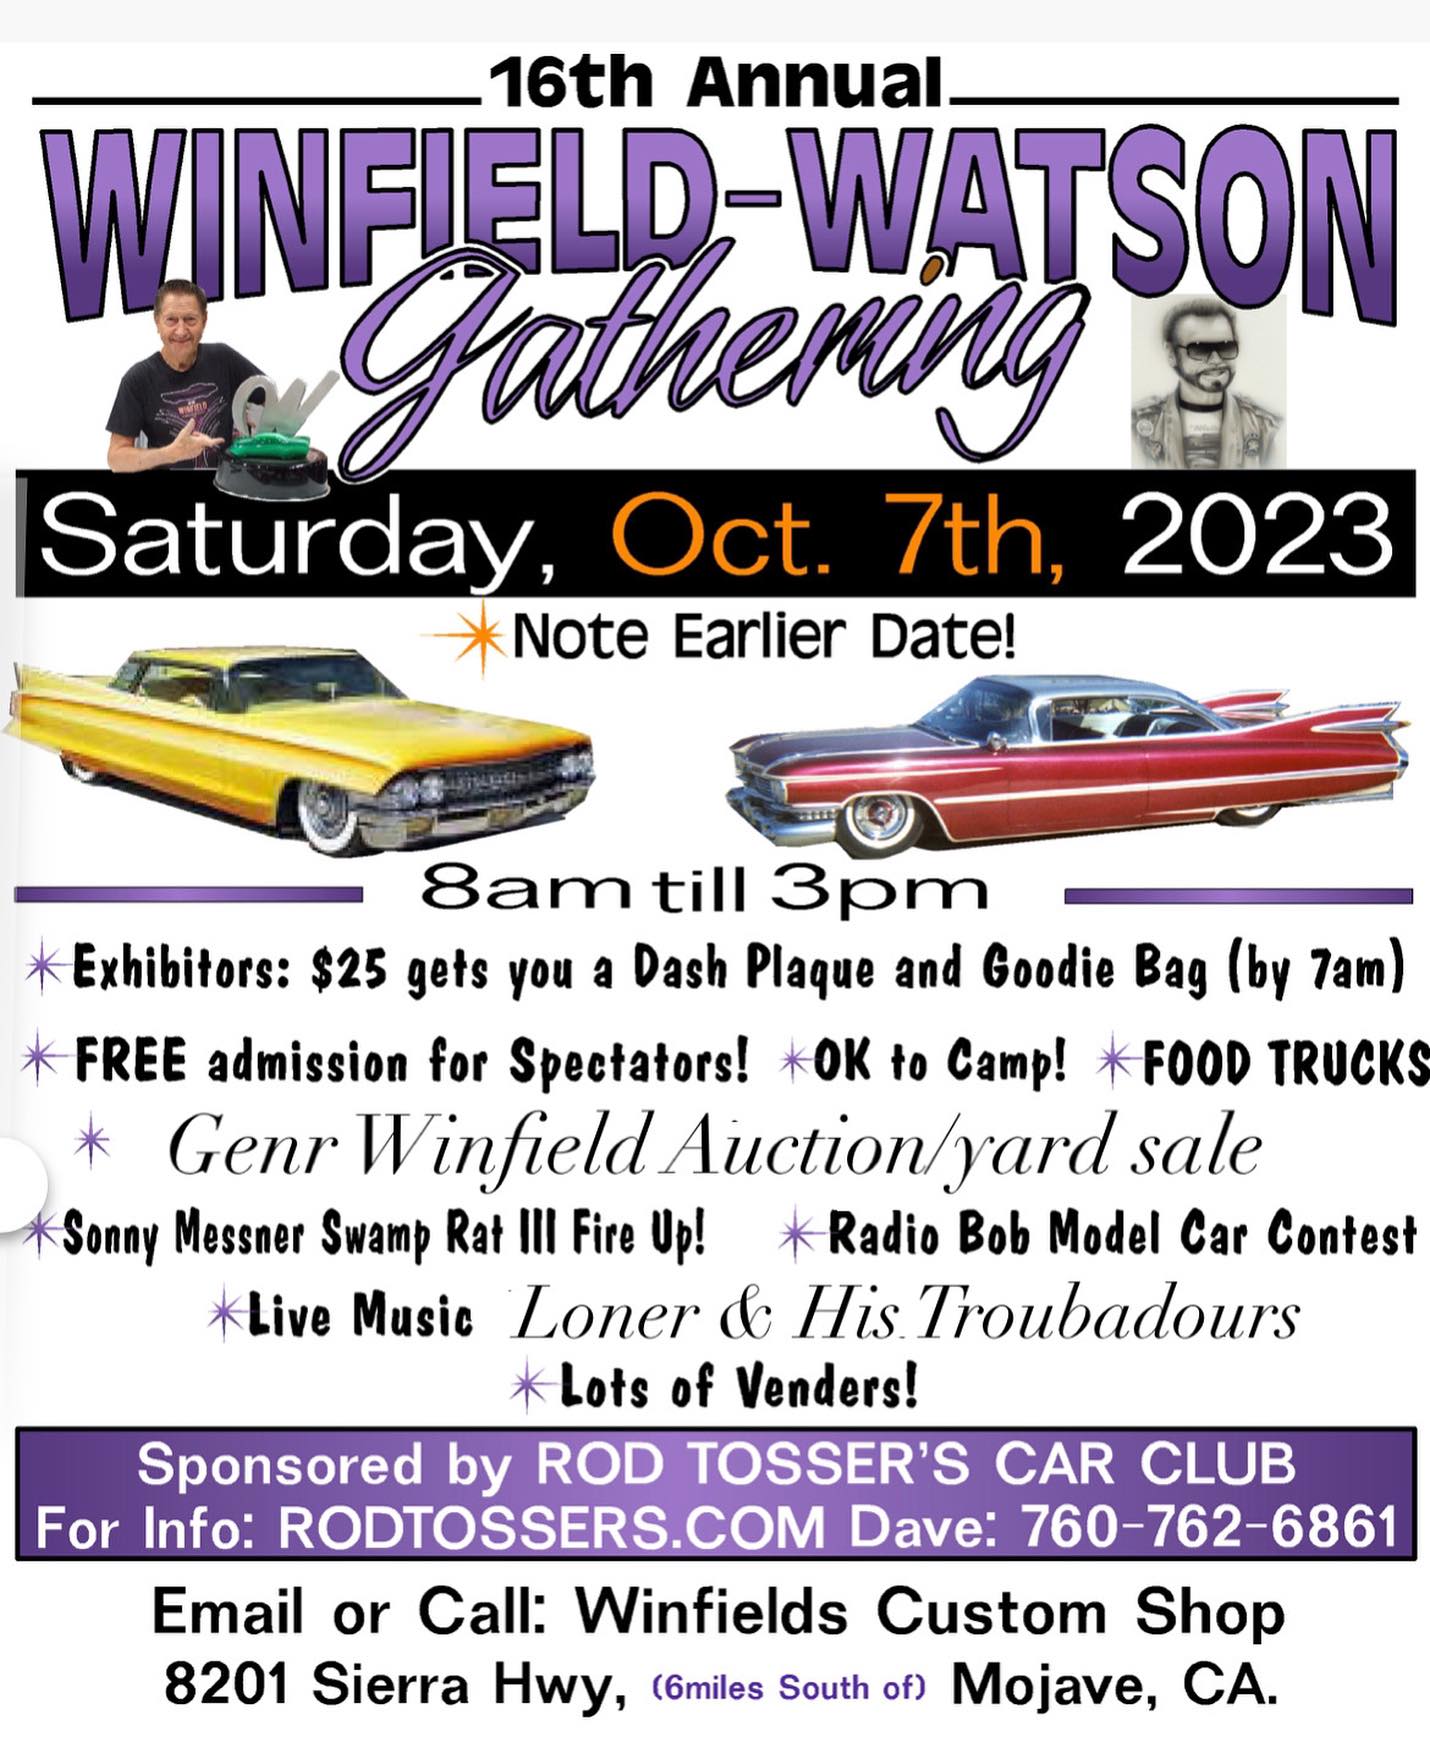 Winfield-Watson Gathering